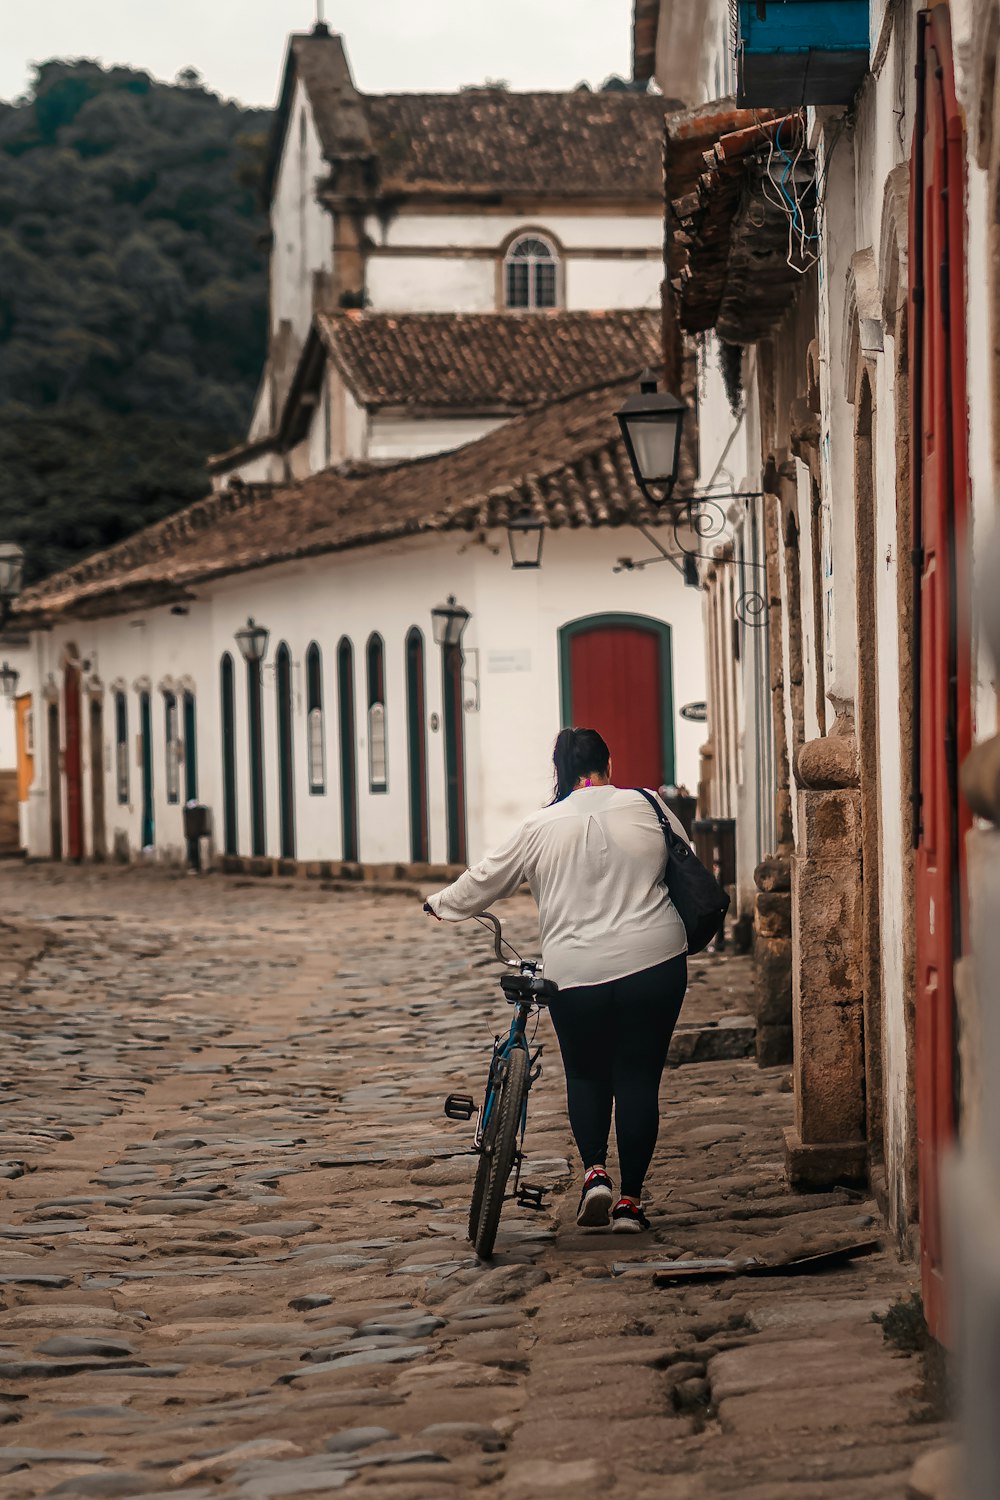 Une femme marchant à vélo dans une rue pavée